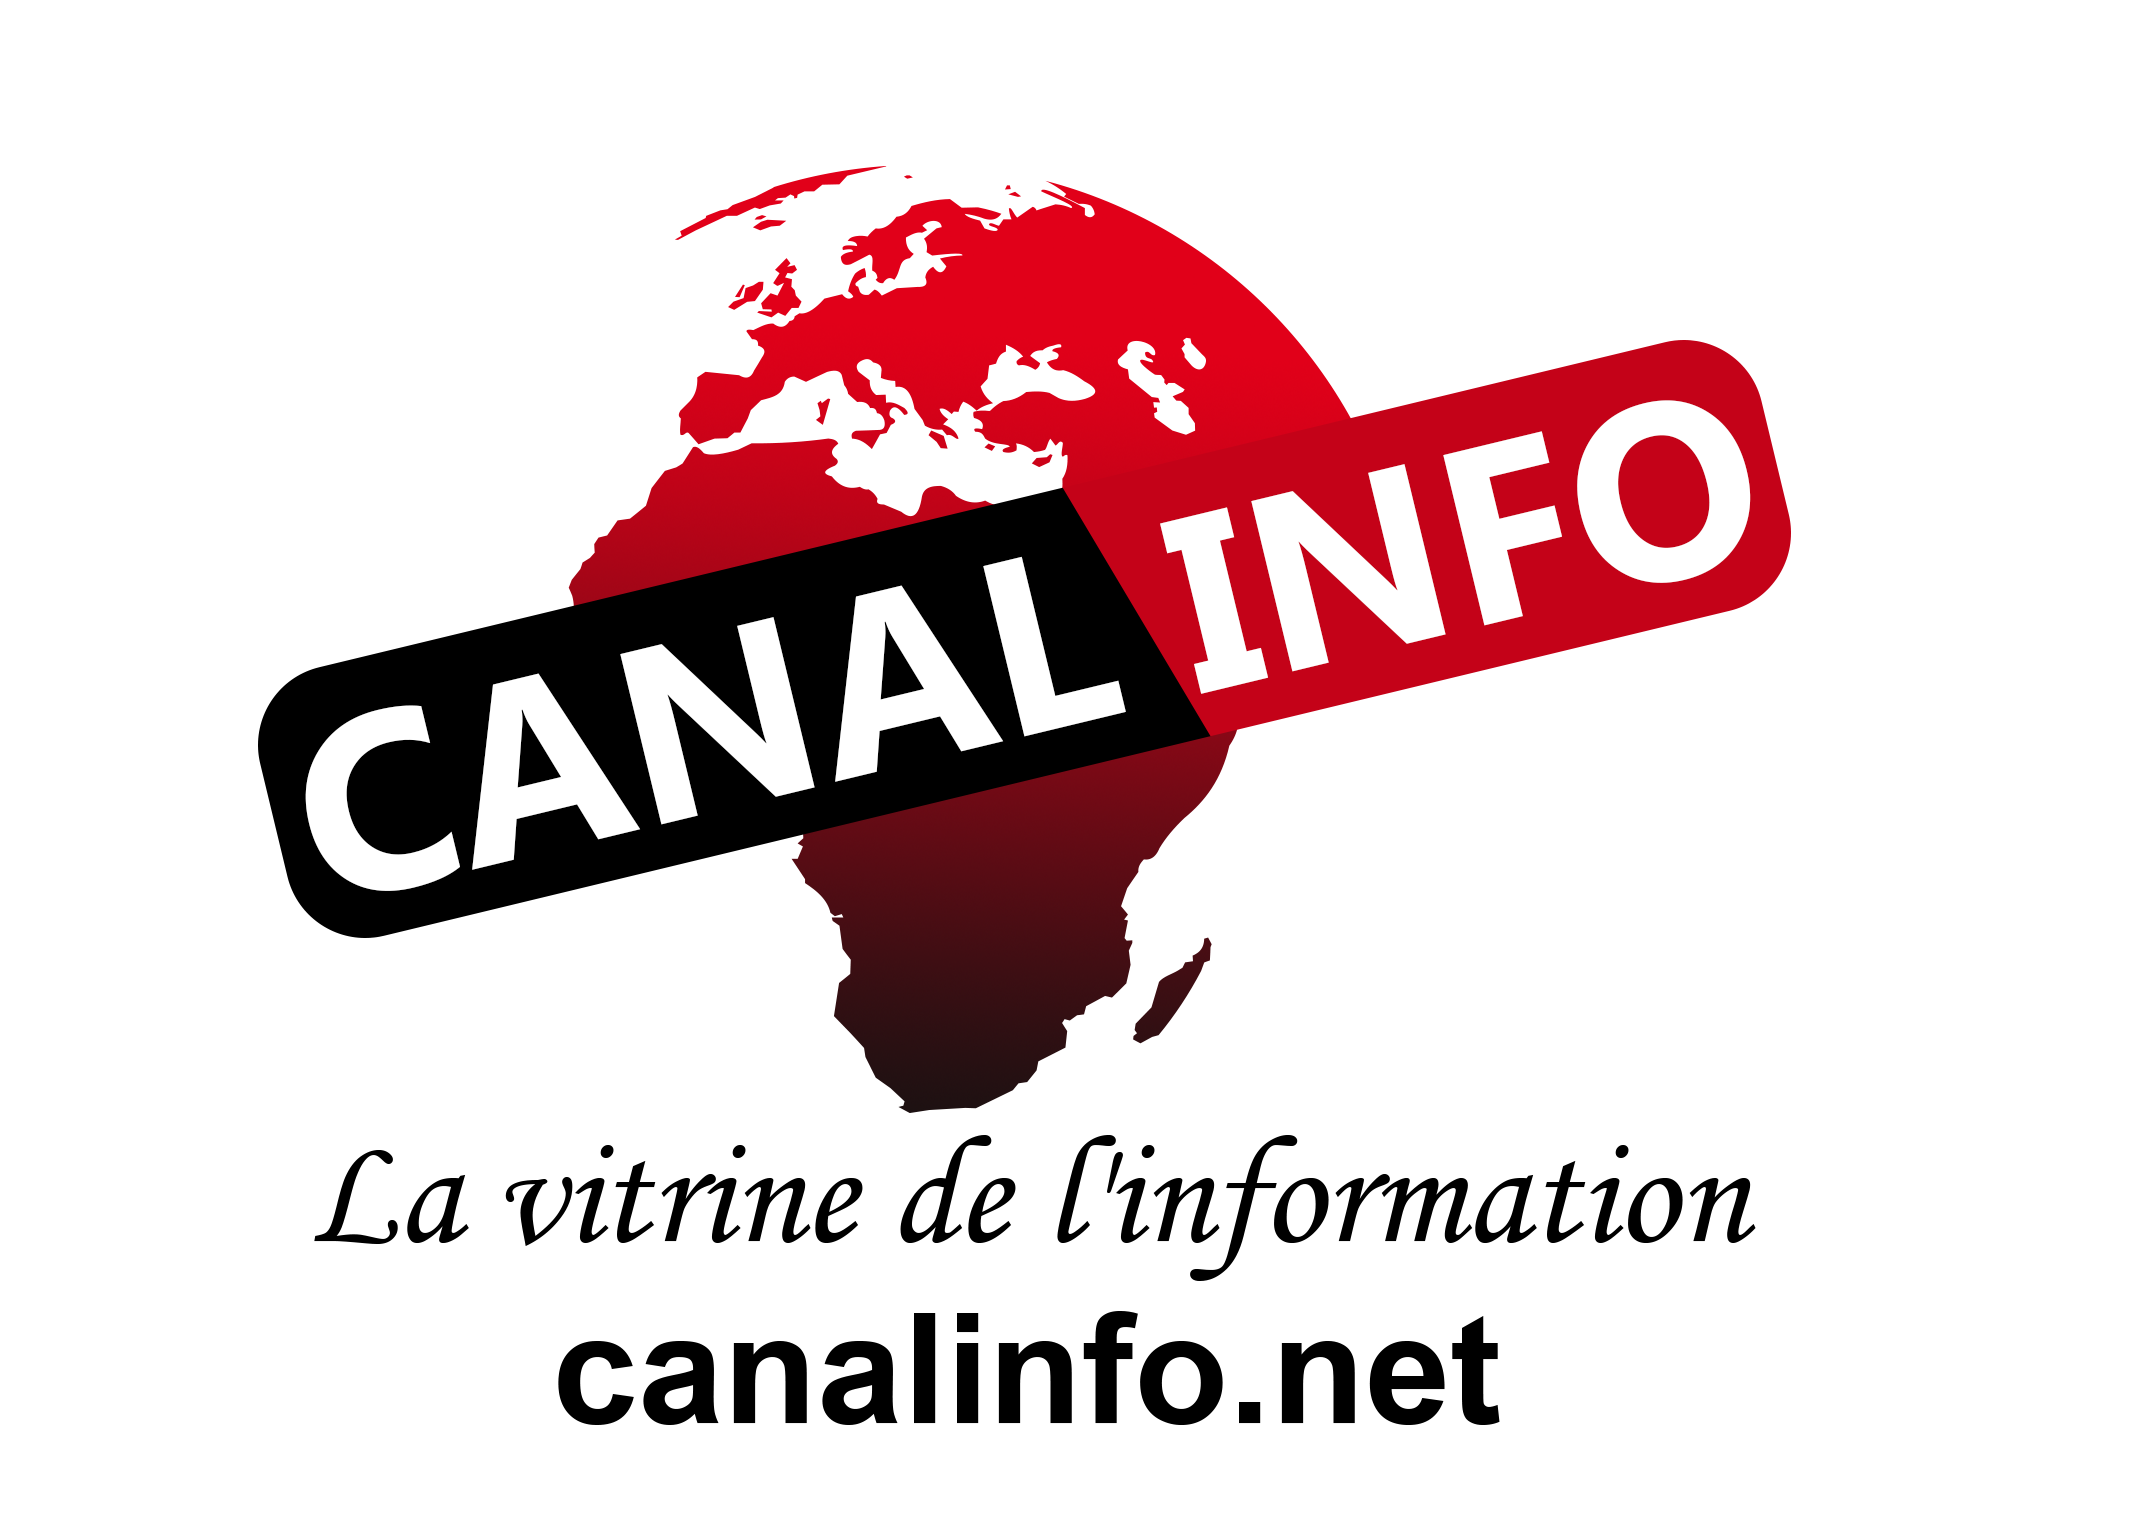 www.canalinfo.net